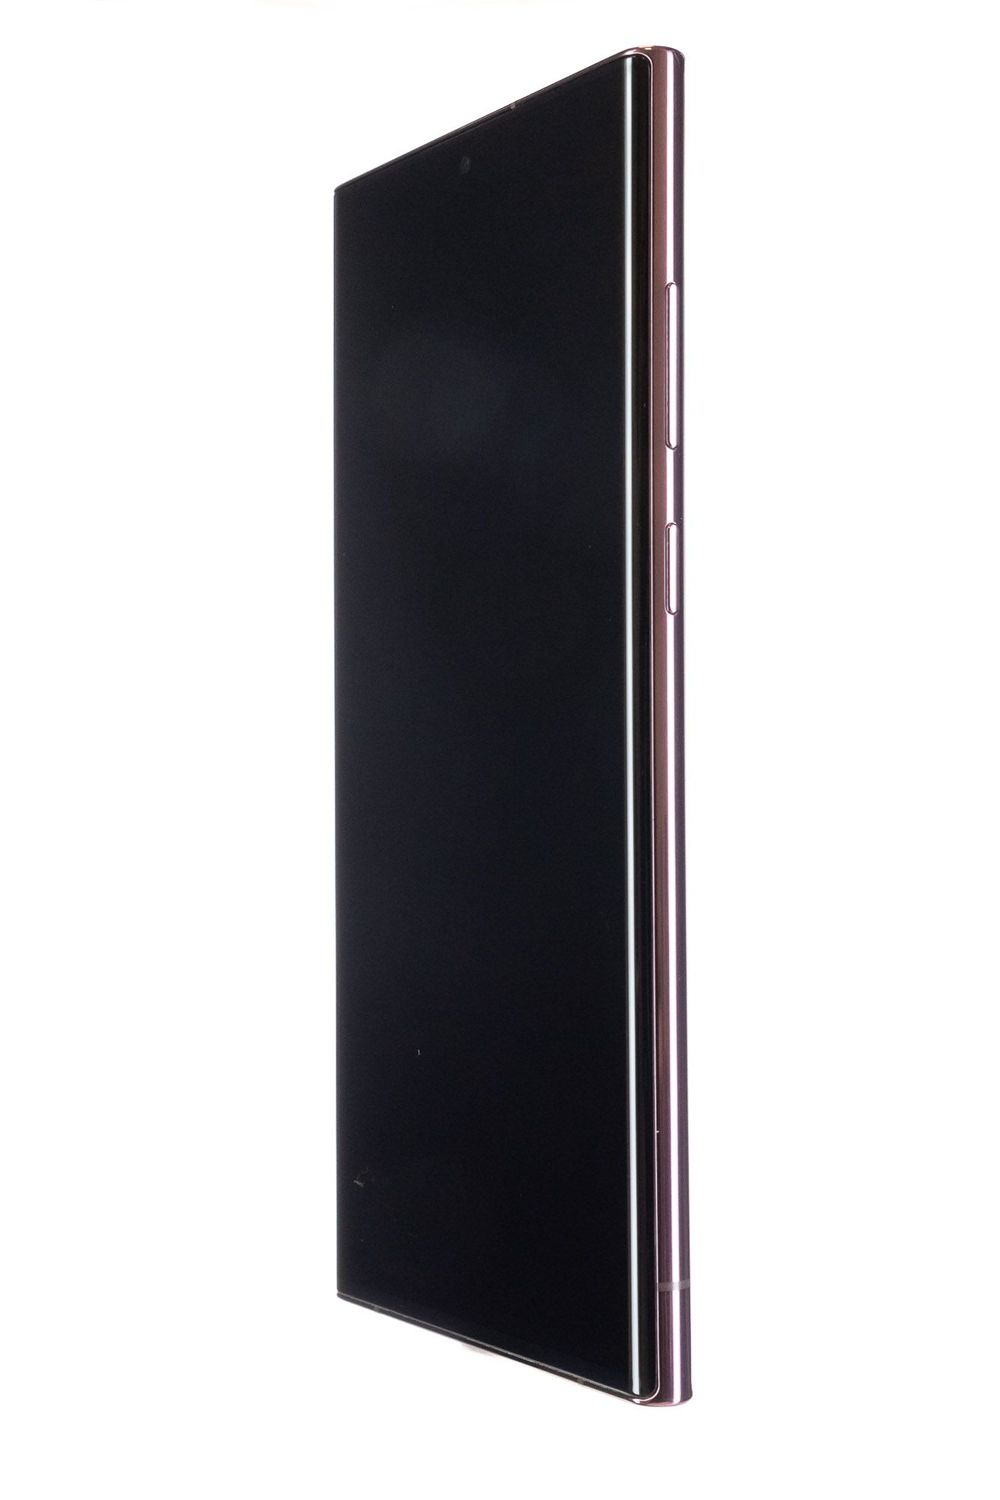 Mobiltelefon Samsung Galaxy S22 Ultra 5G, Burgundy, 256 GB, Bun